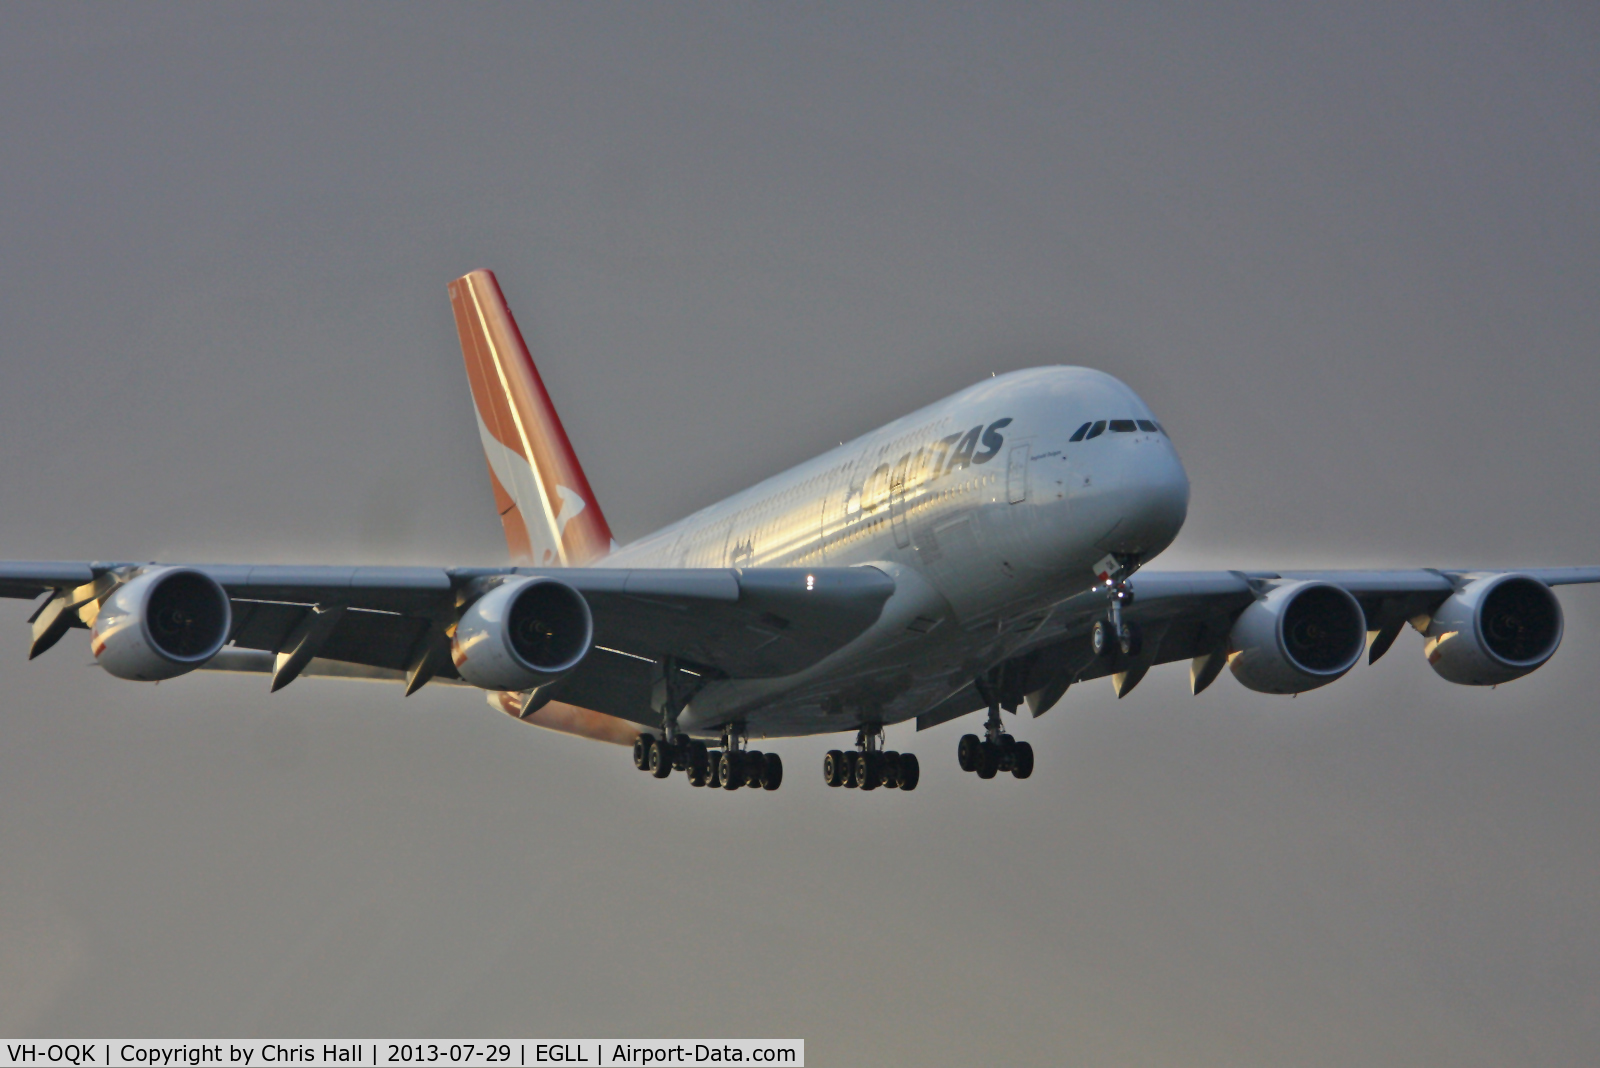 VH-OQK, 2011 Airbus A380-842 C/N 063, Qantas